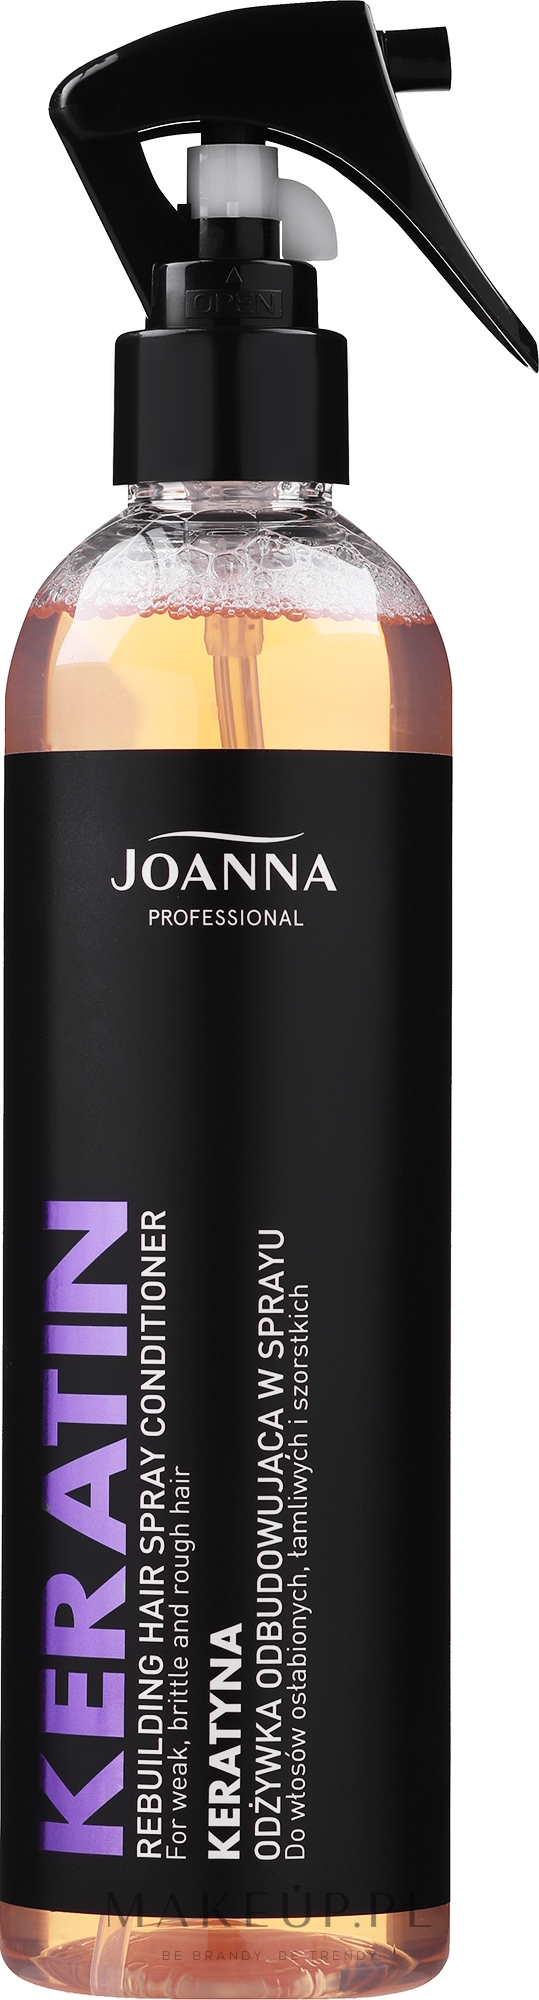 joanna keratyna odżywka do włosów professional z keratyną